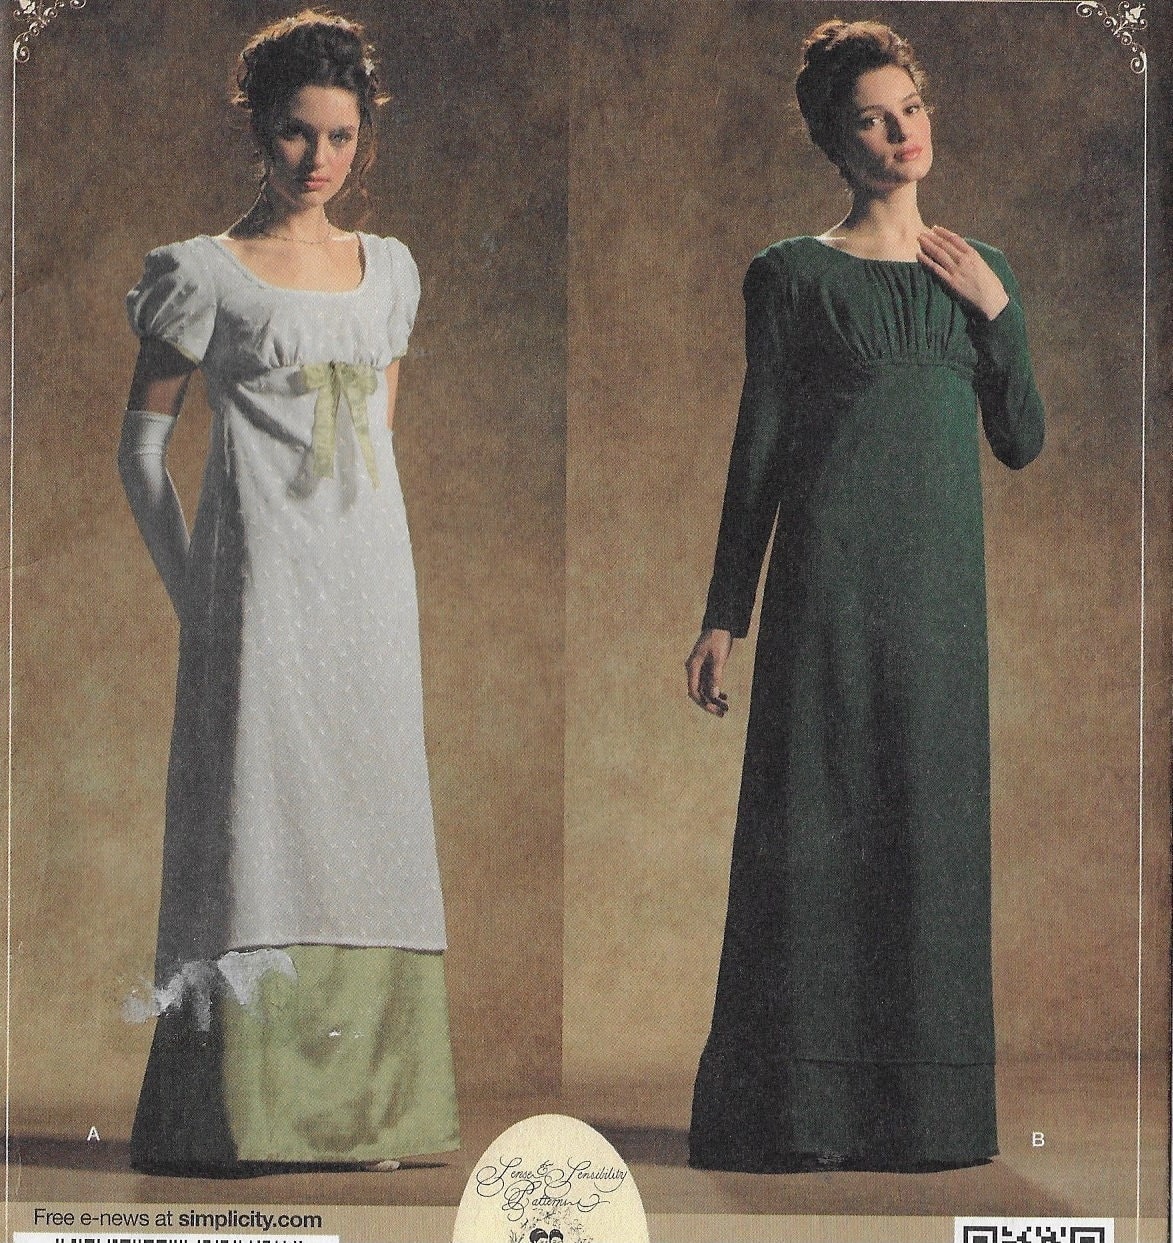 binden Stevig Aantrekkelijk zijn aantrekkelijk Regency Era Womens Costume Circa 1795 to 1825 Simplicity - Etsy